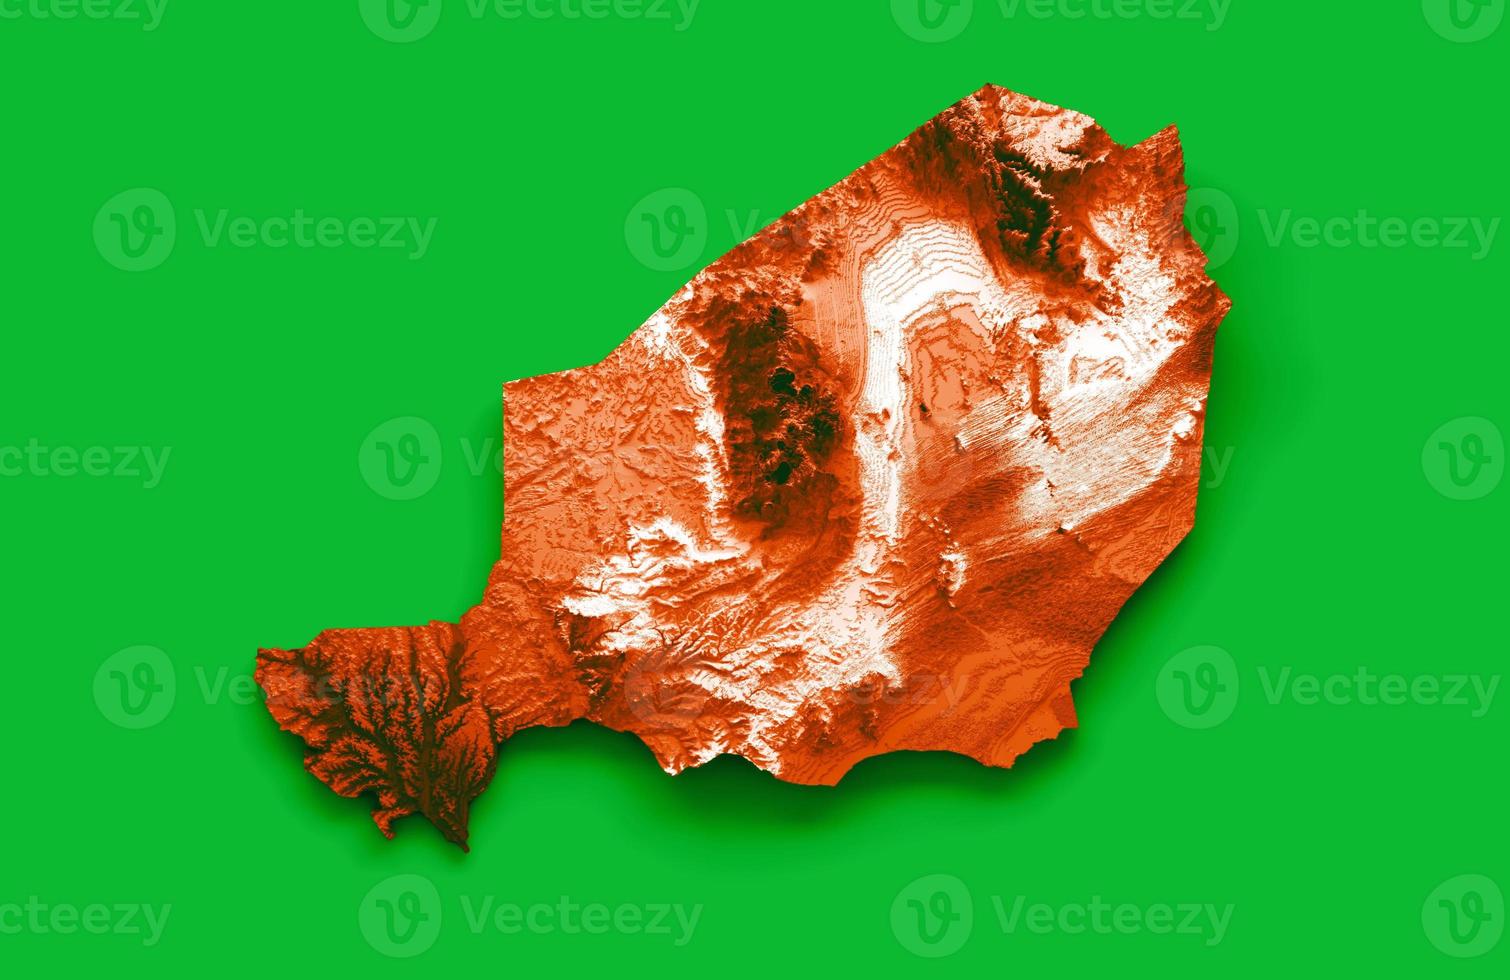 niger-karte mit den flaggenfarben grün, orange und weiß schattierte reliefkarte 3d-illustration foto